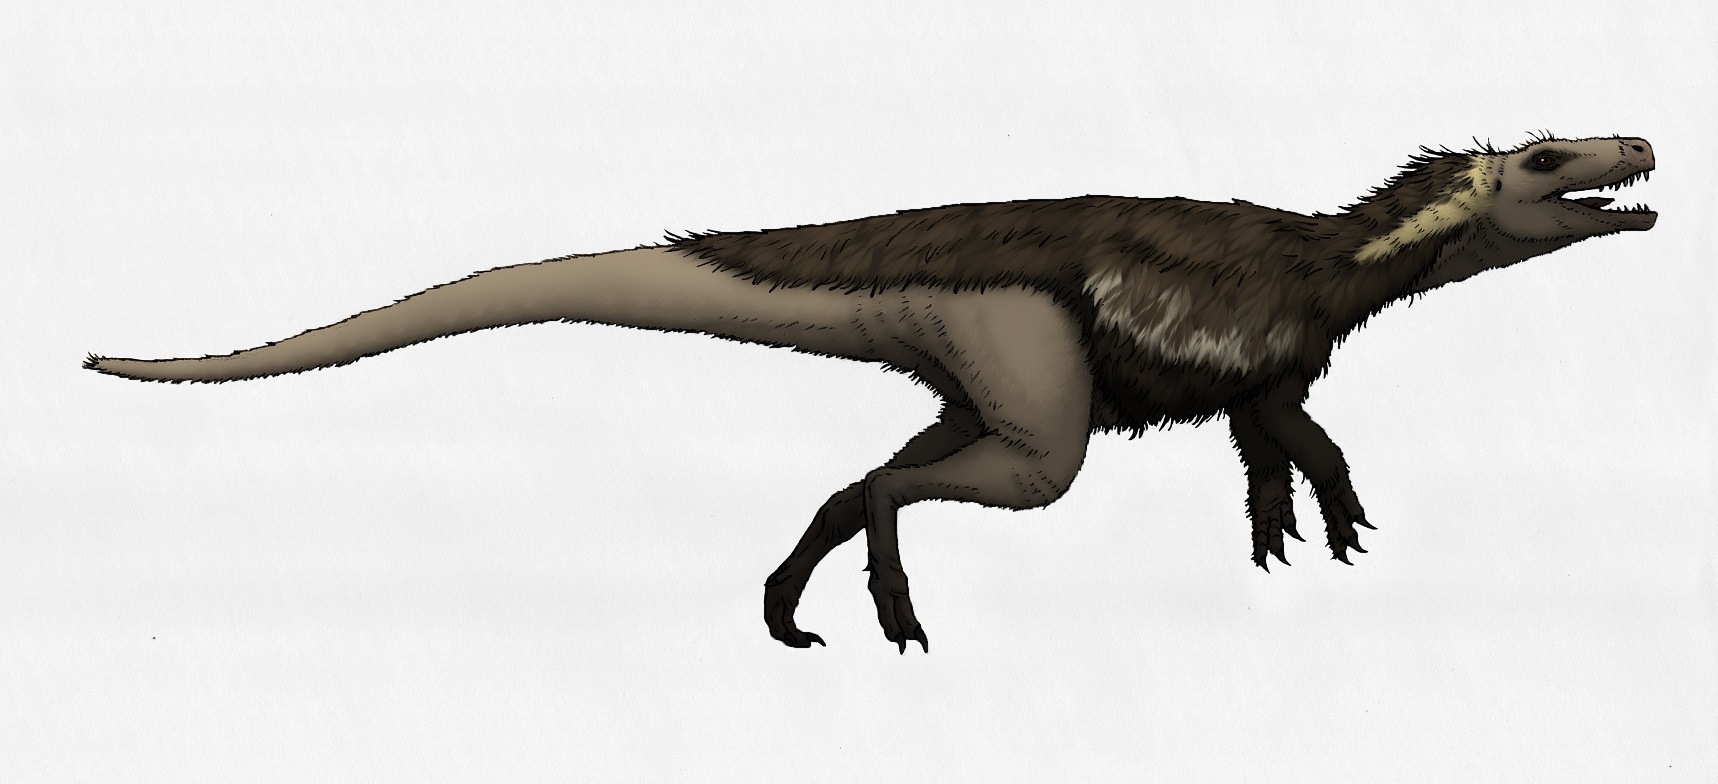 Výtvarná rekonstrukce přibližného vzezření herrerasaurida druhu Gnathovorax cabreirai. Tento 233 milionů let starý masožravý dinosaurus patří k fauně geologického souvrství Santa Maria, nacházejícího se na území jižní Brazílie, a je tak jedním z nejs